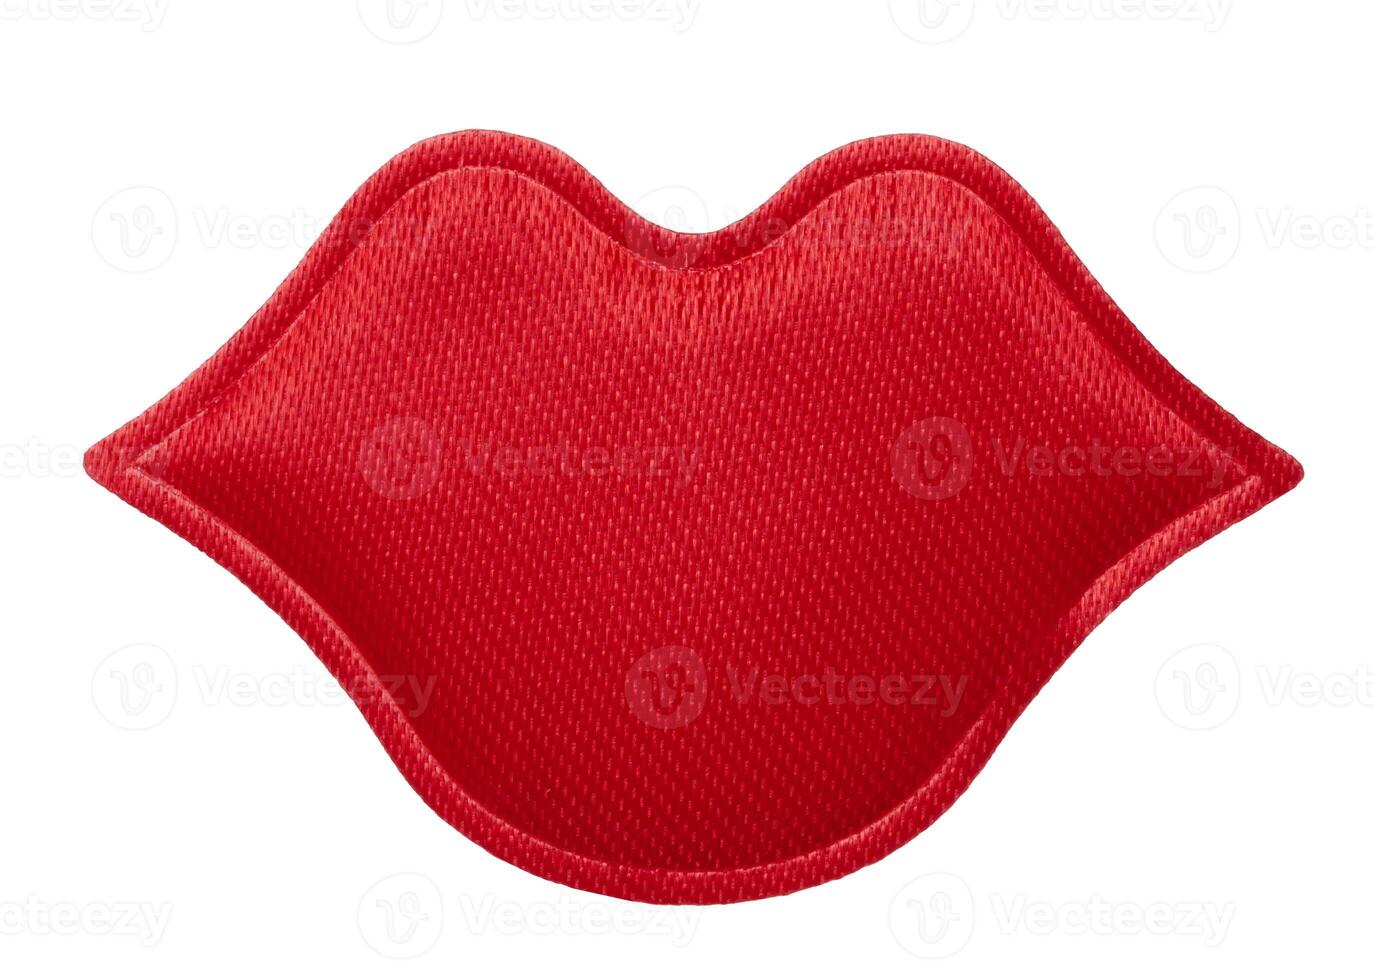 rot Textil- Lippen auf isoliert Hintergrund foto